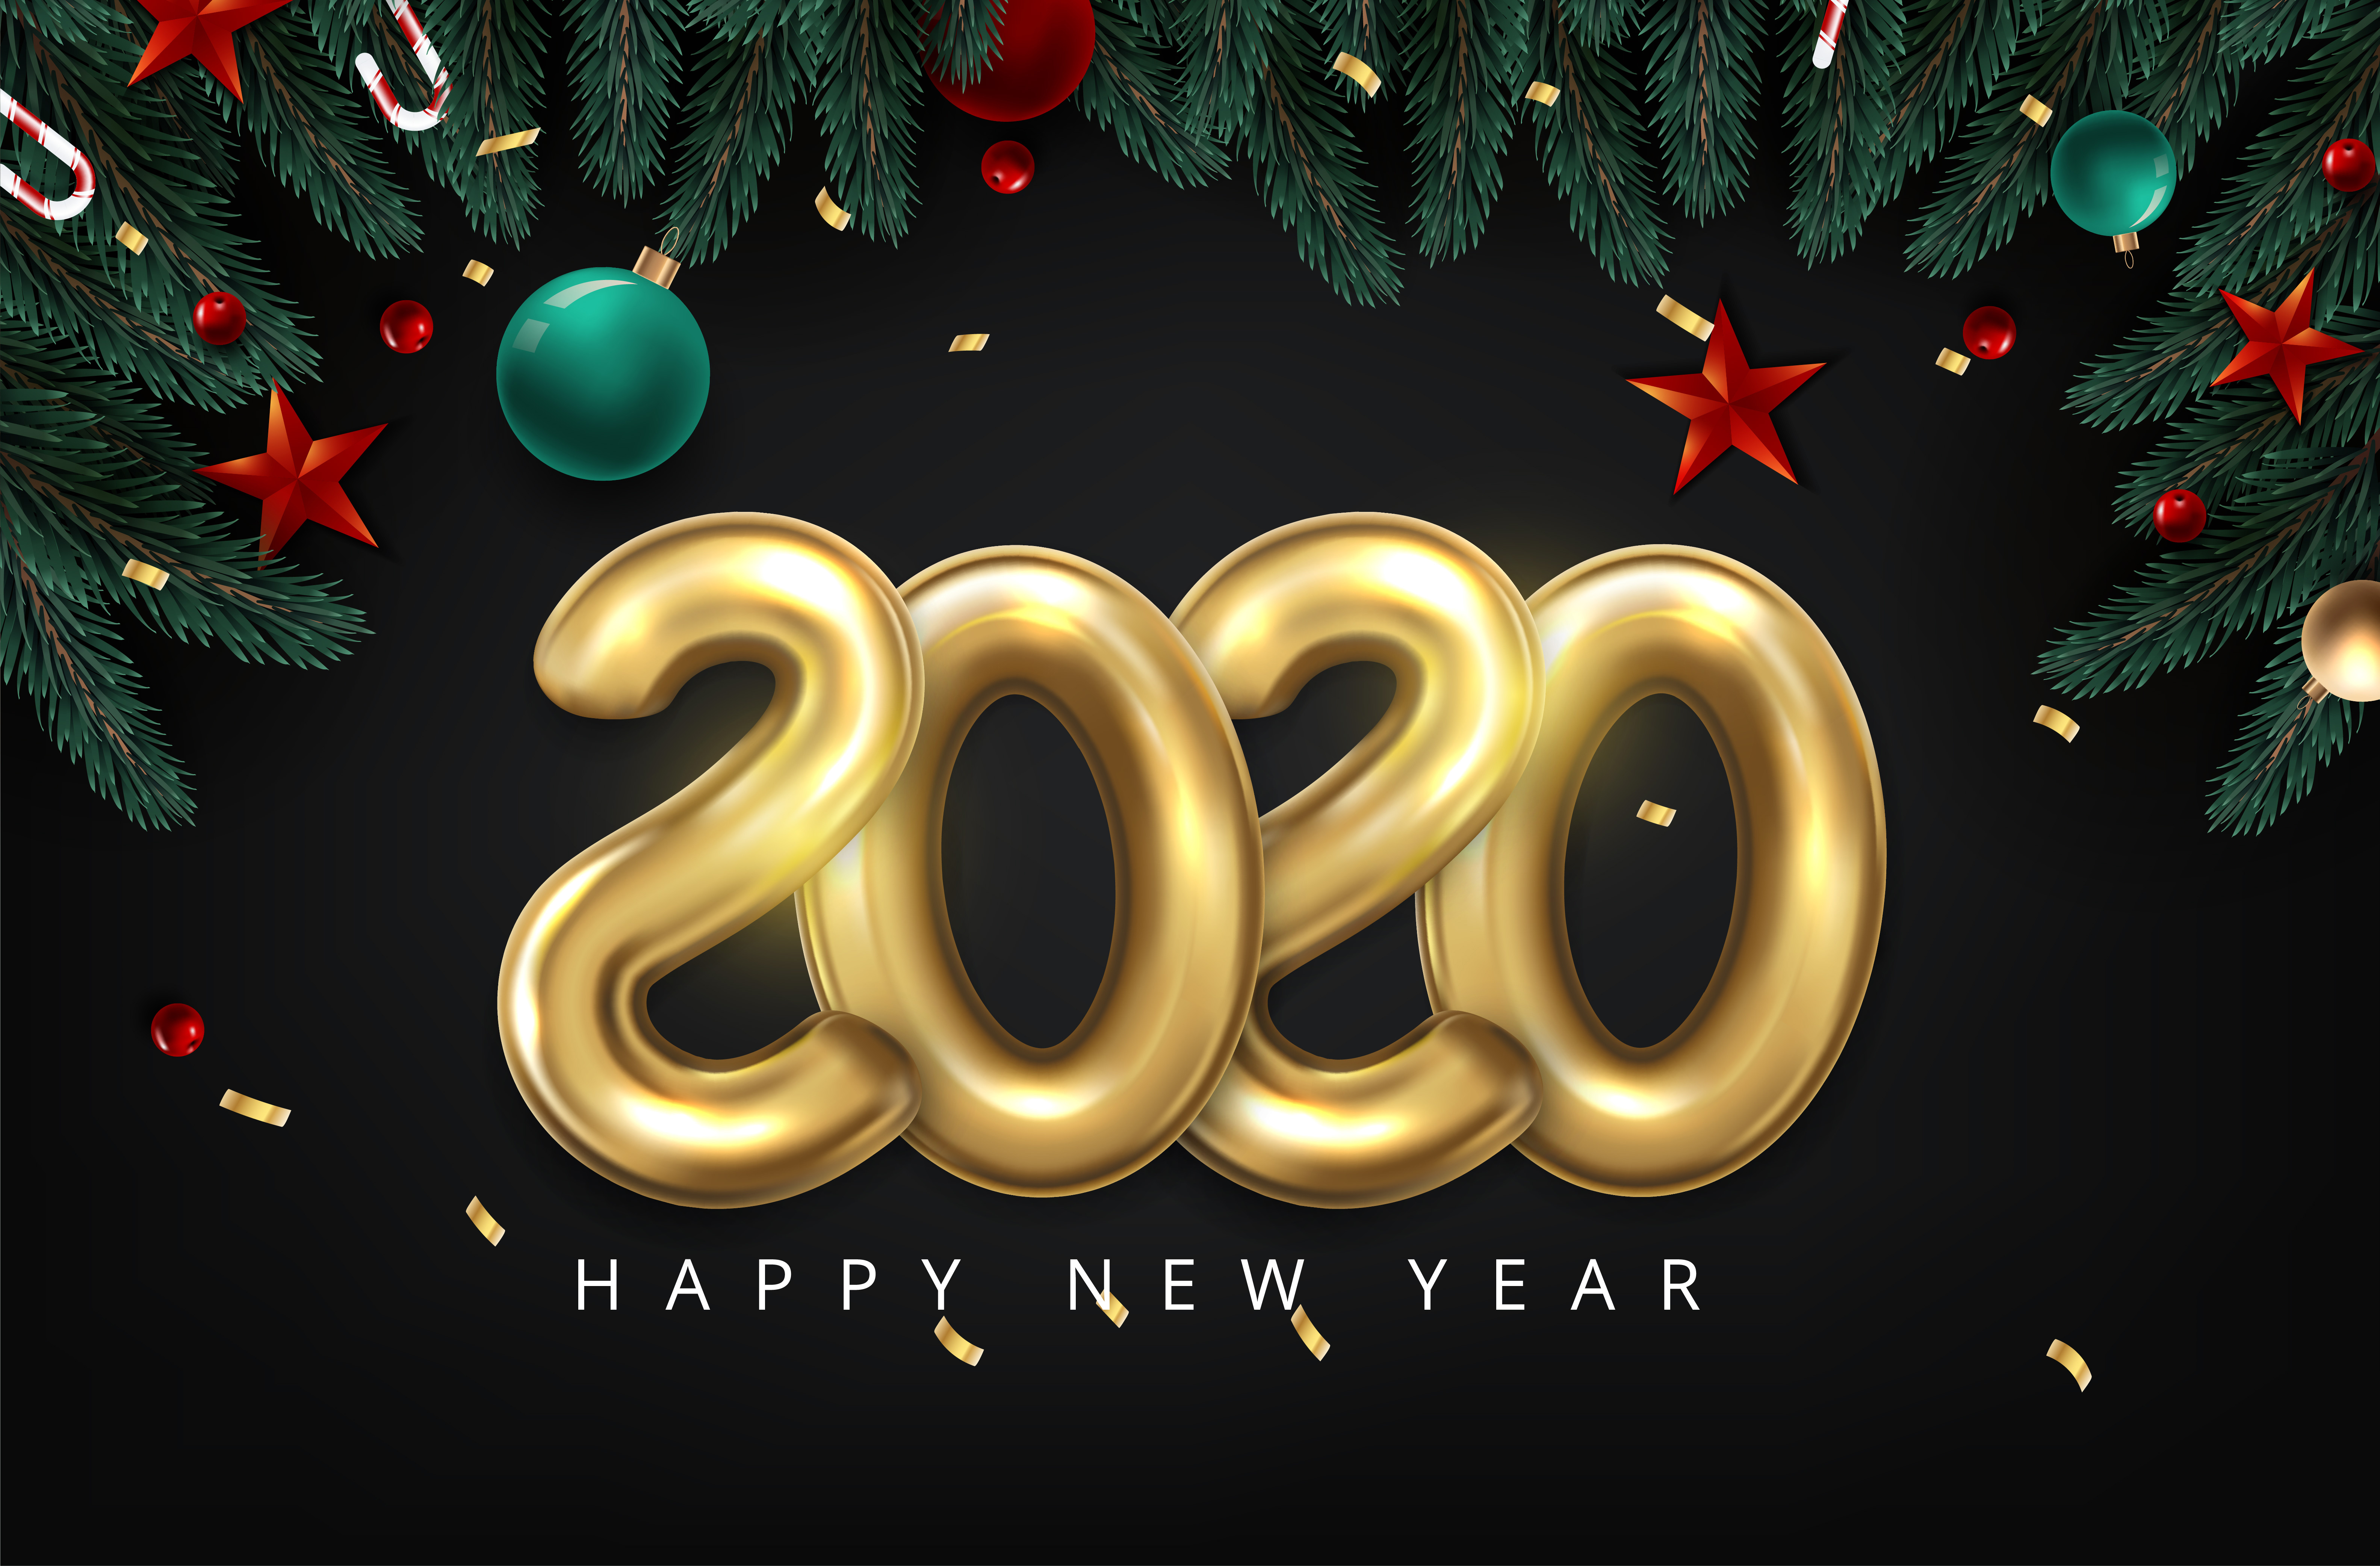 Фото нового года 2020 год. Новый год 2020 год. Новый год 2020 надпись. Новый год фон 2020. Новый год 2020 картинки.